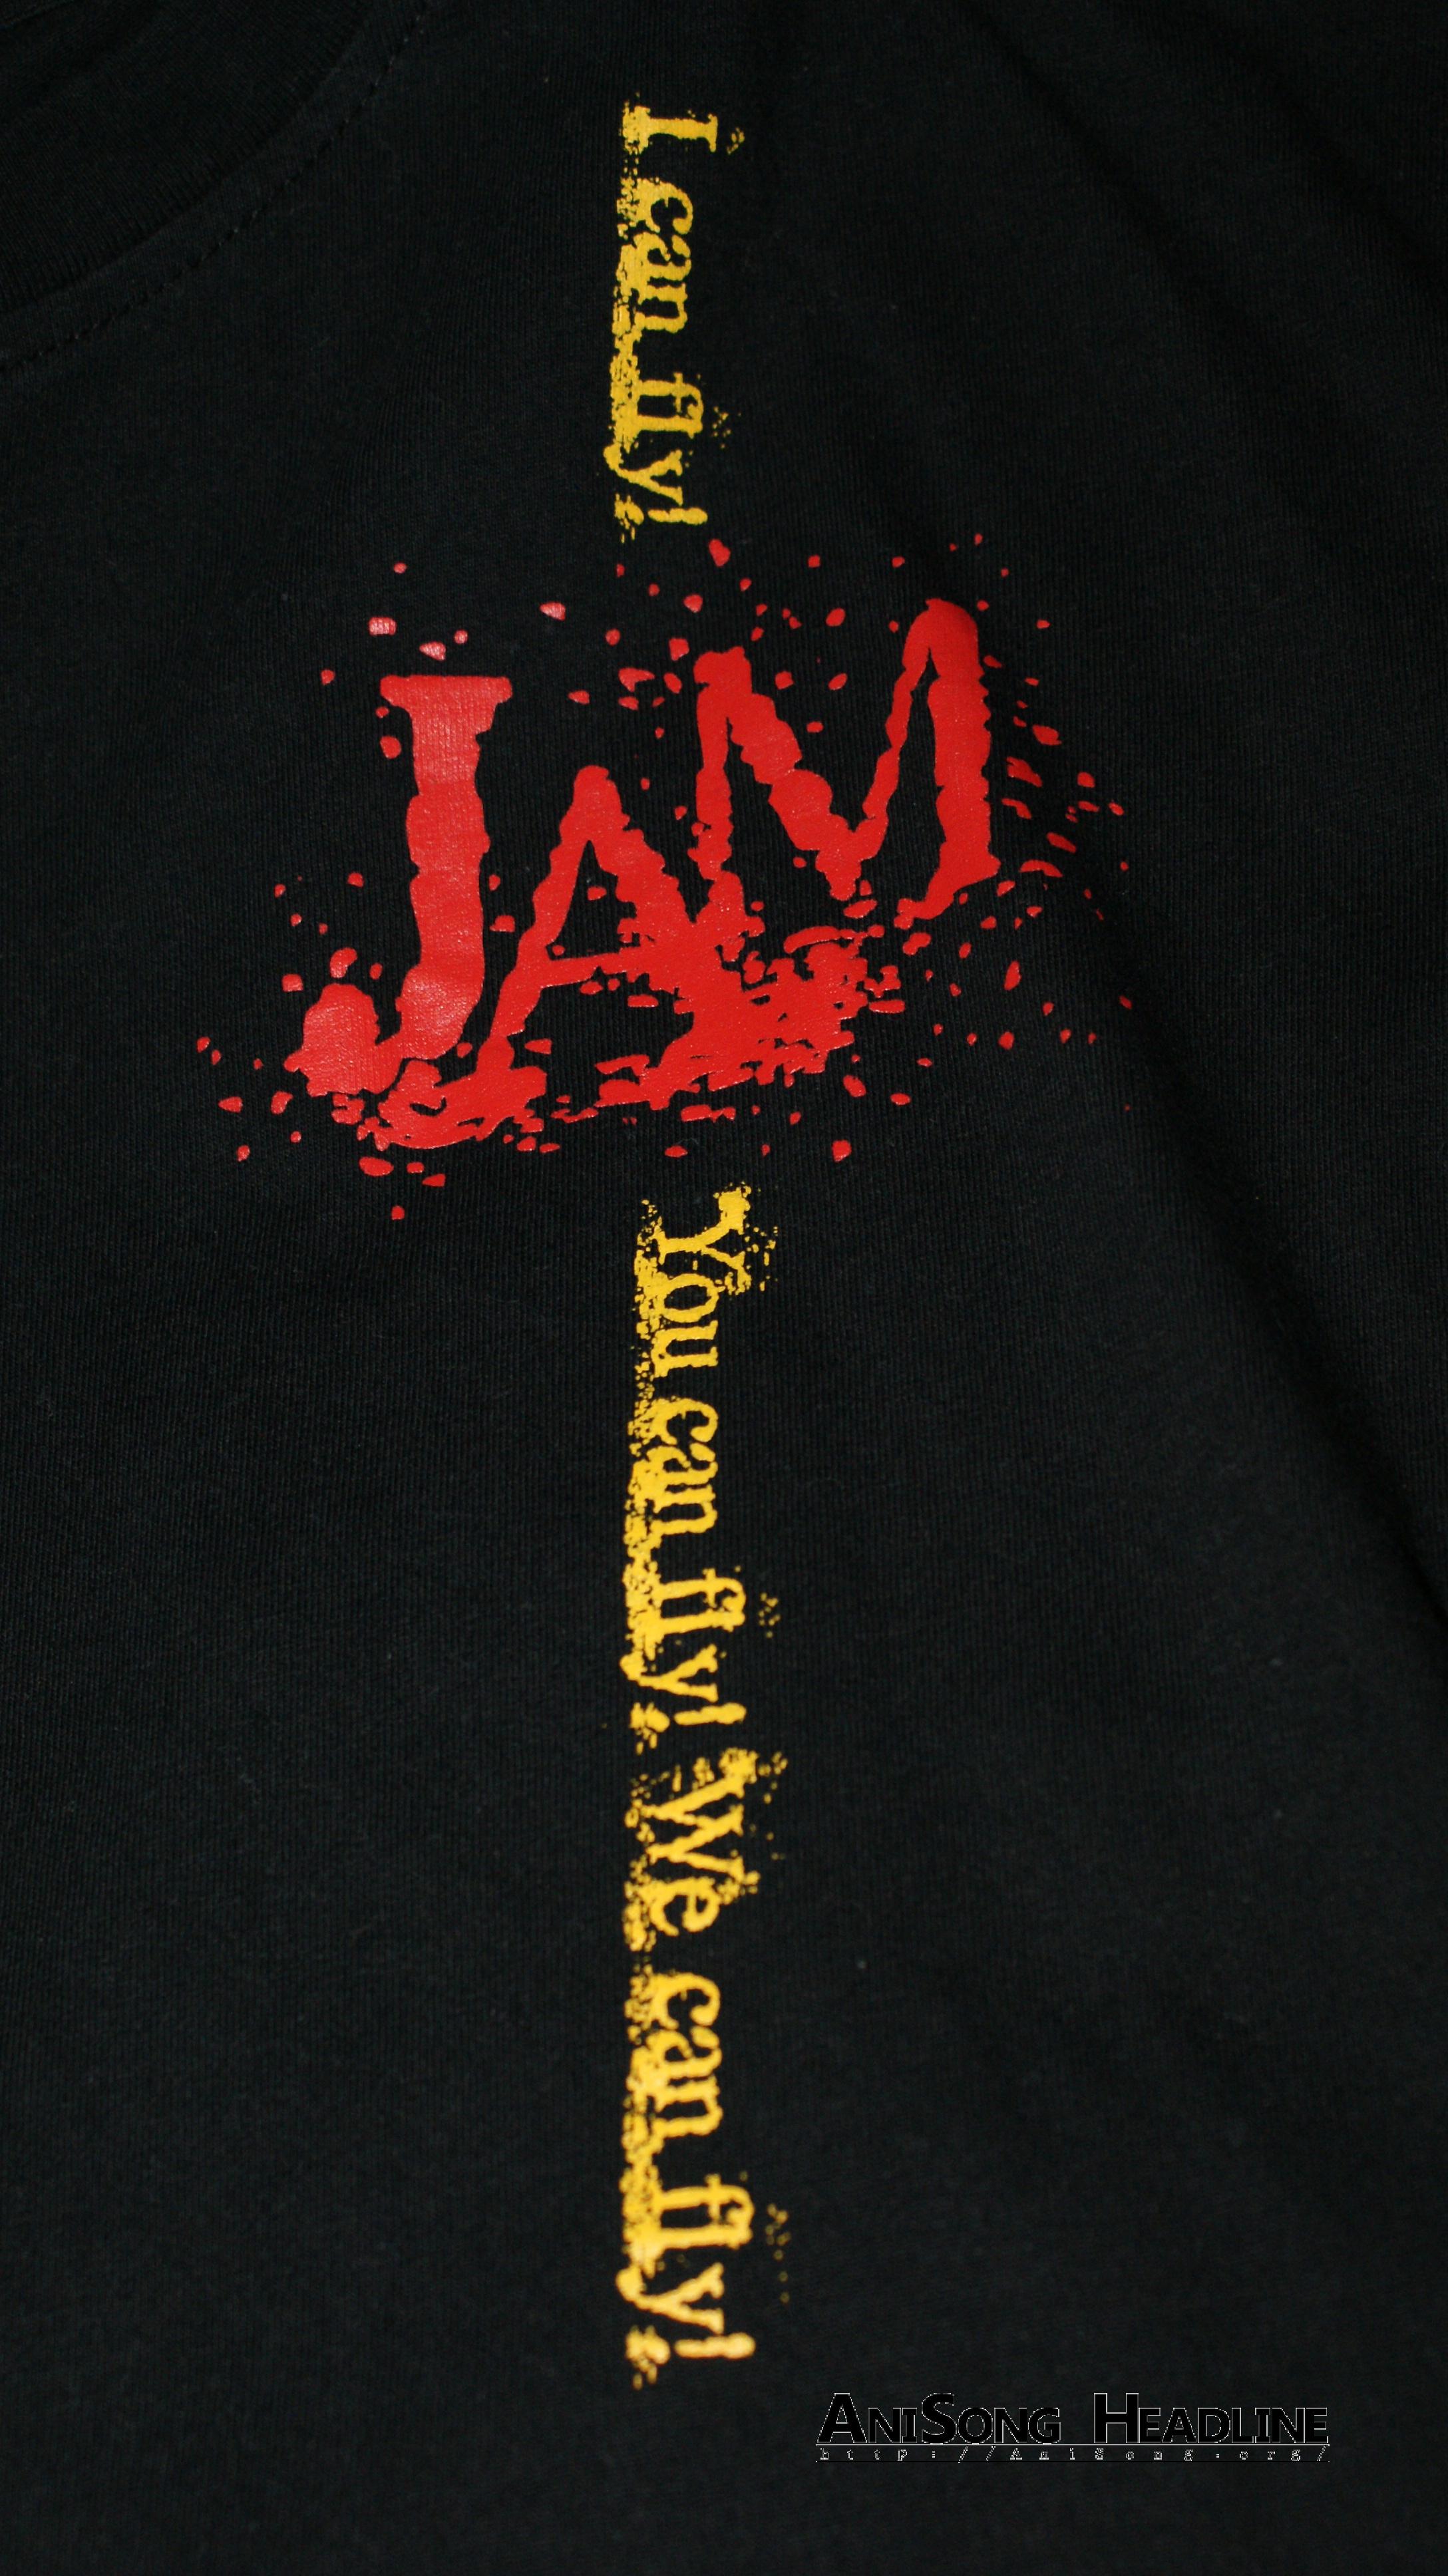 十年前的果醬塗在麵包上會是甚麼味道 Jam Project 十週年紀念特輯 Anisong Headline 動漫音樂資訊站